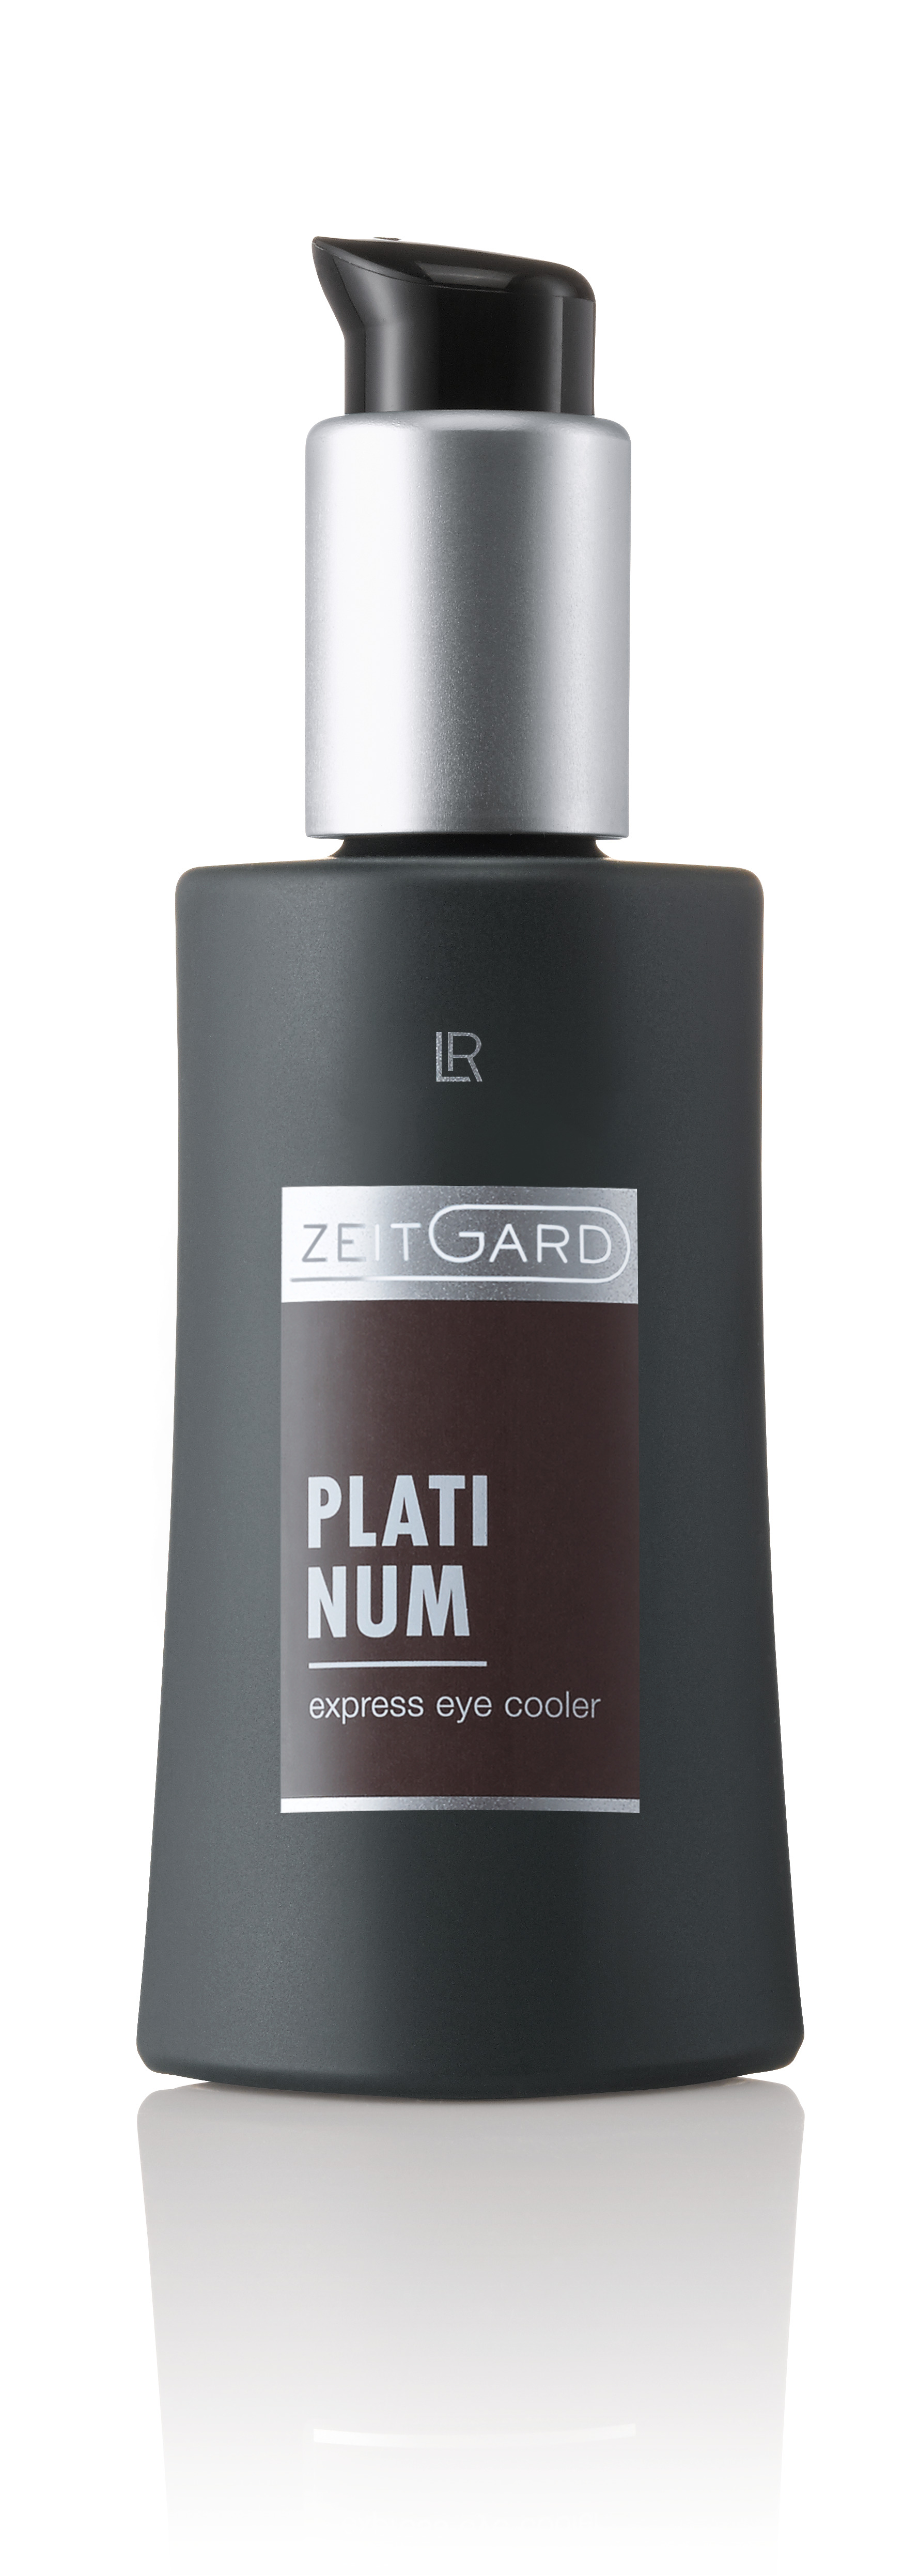 LR Zeitgard Platinum Men Care Express Eye Cooler